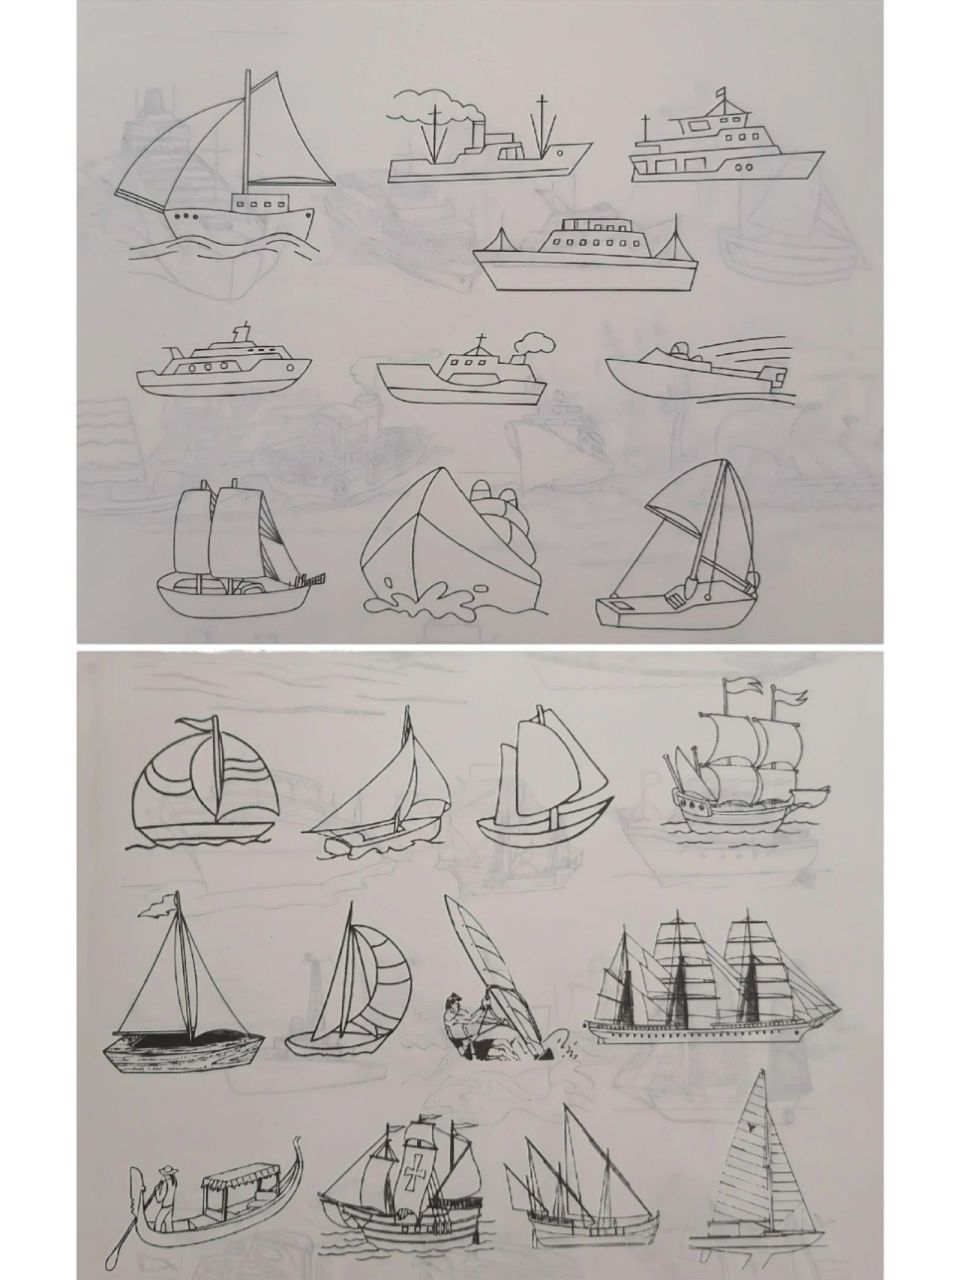 船的画法简笔画图片